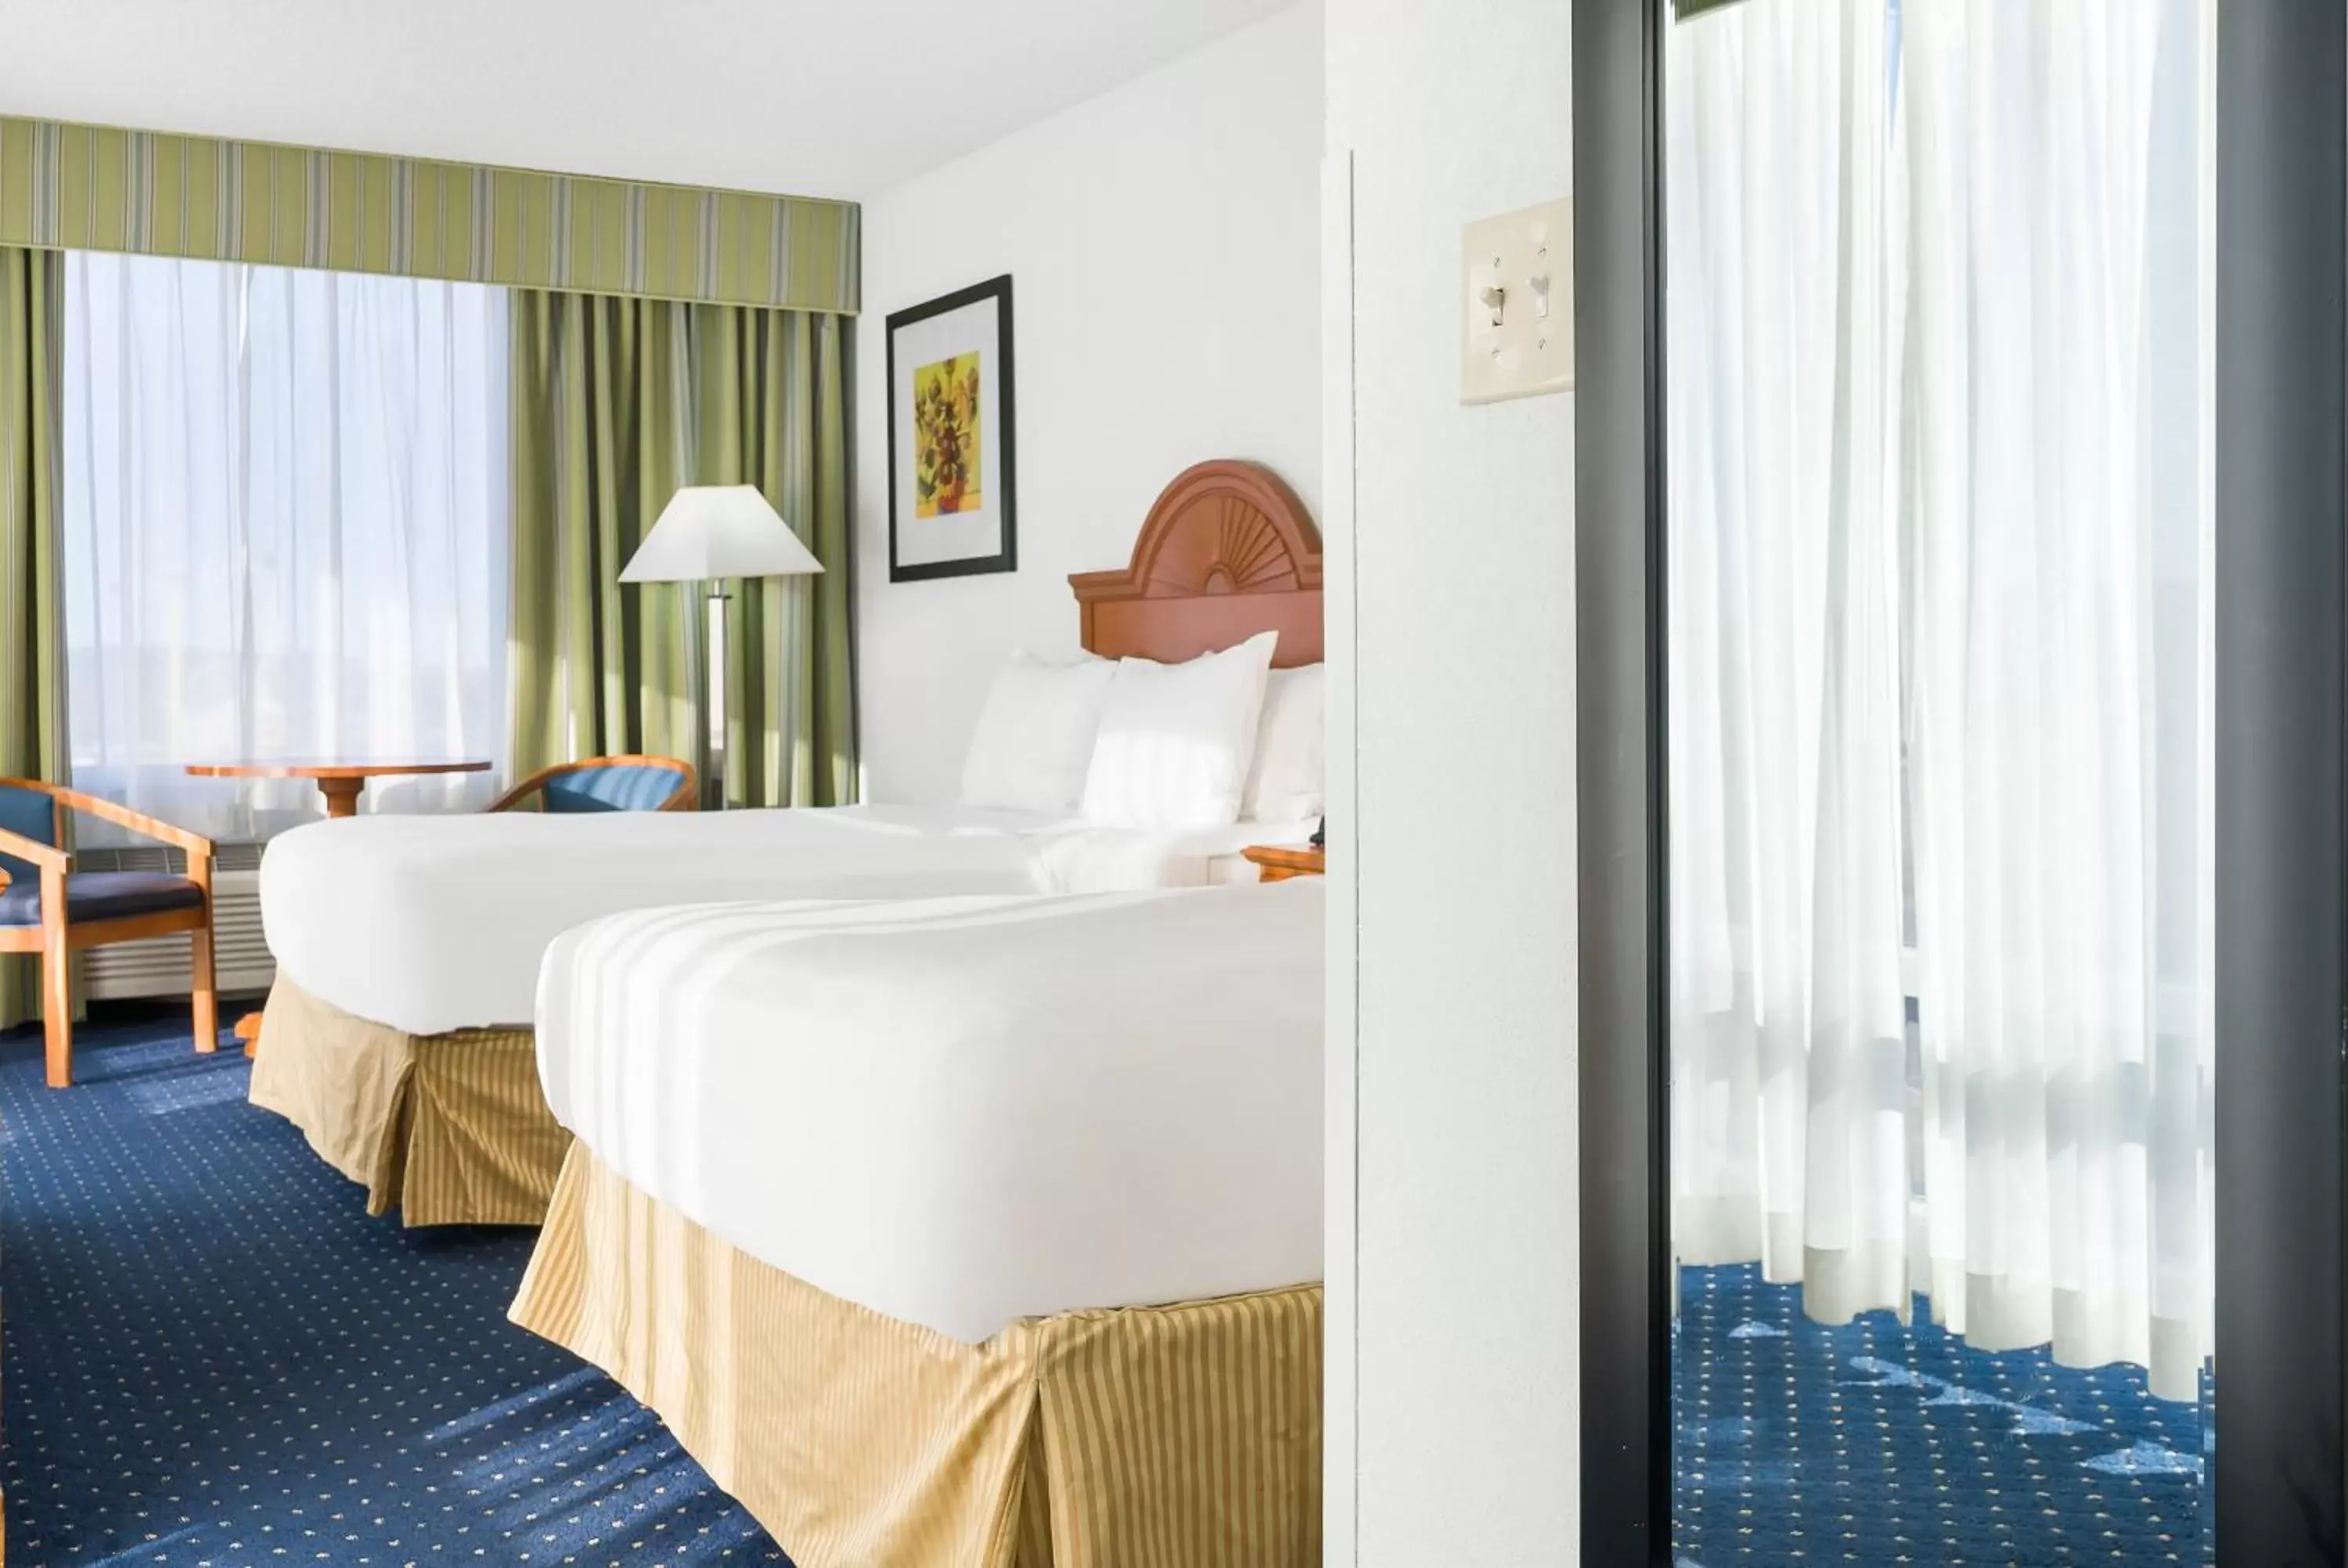 Deluxe Double Room in Thousand Hills Resort Hotel